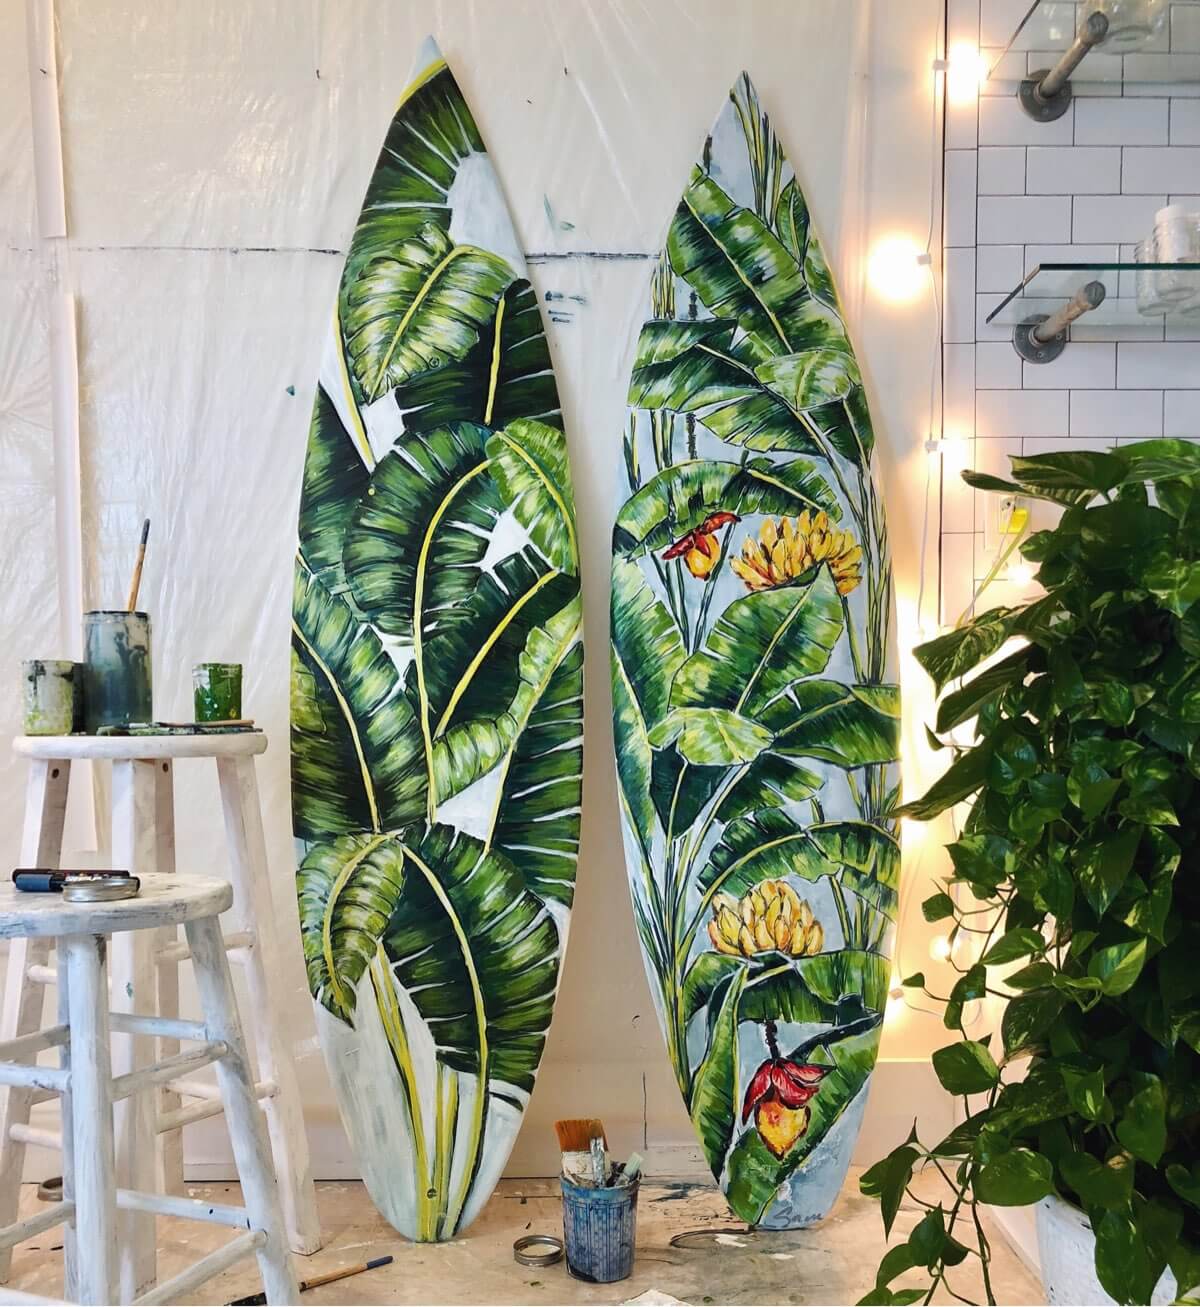 Surfboard art by Sam Malpass